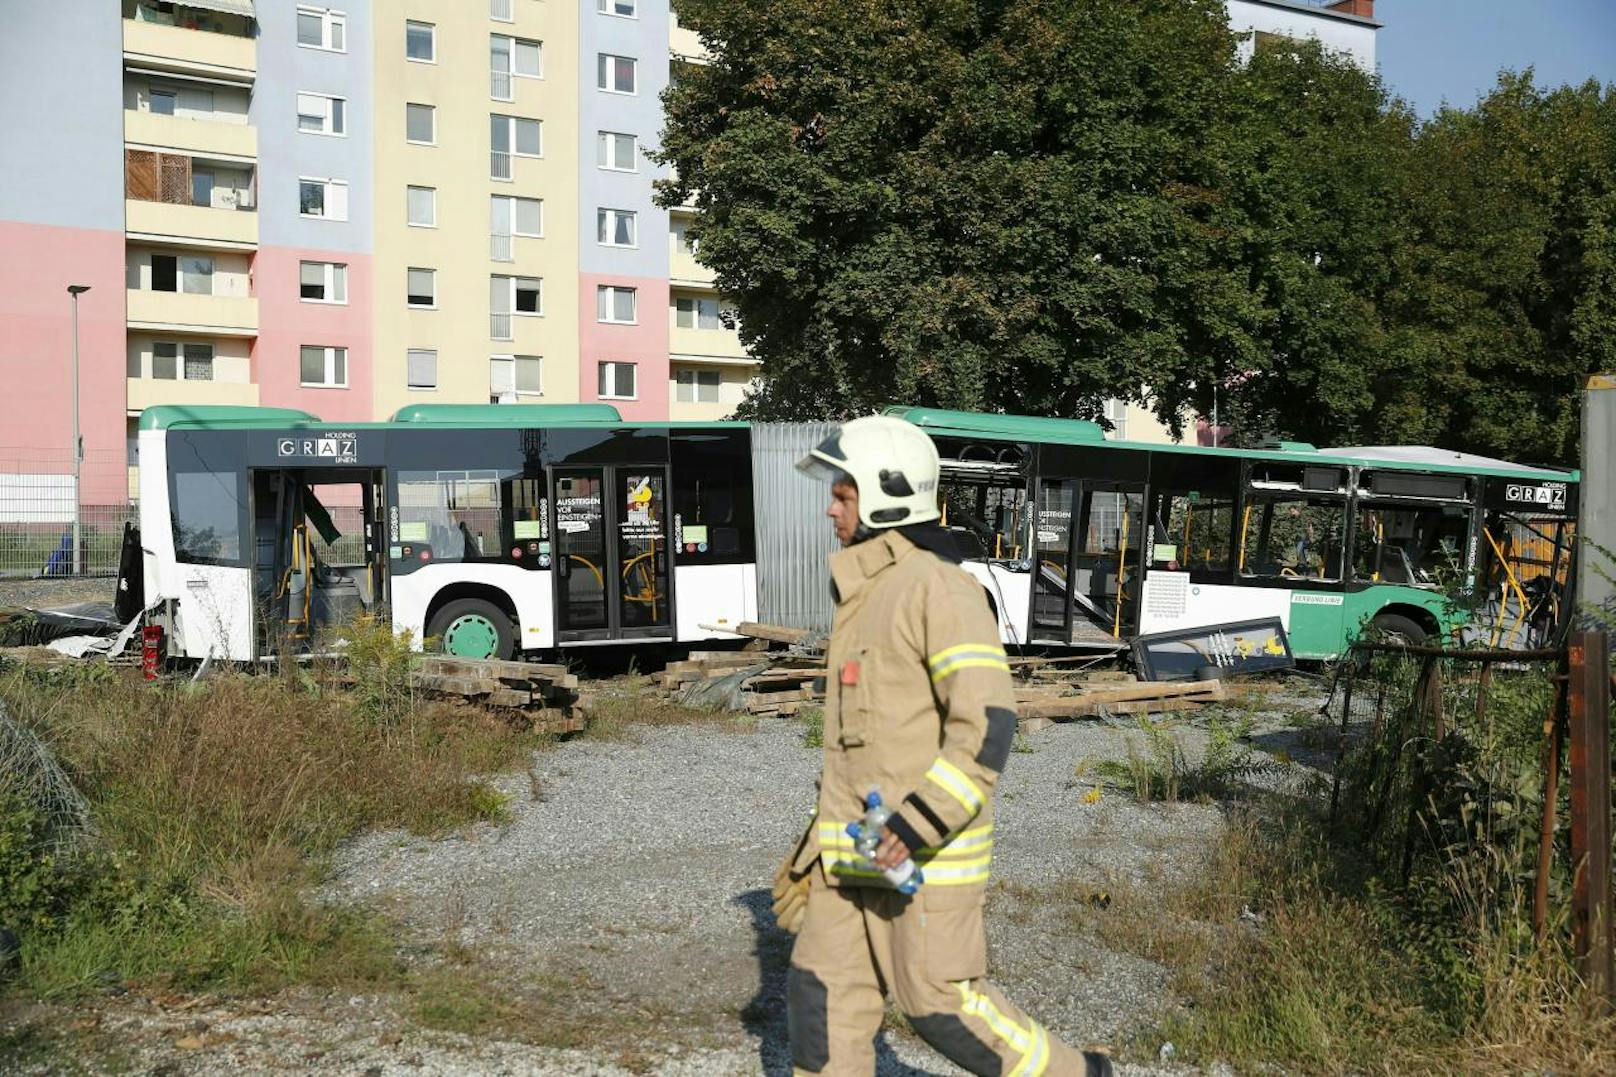 Ein Bus der Linie 33 ist mit einer GKB-Garnitur zusammengekracht.